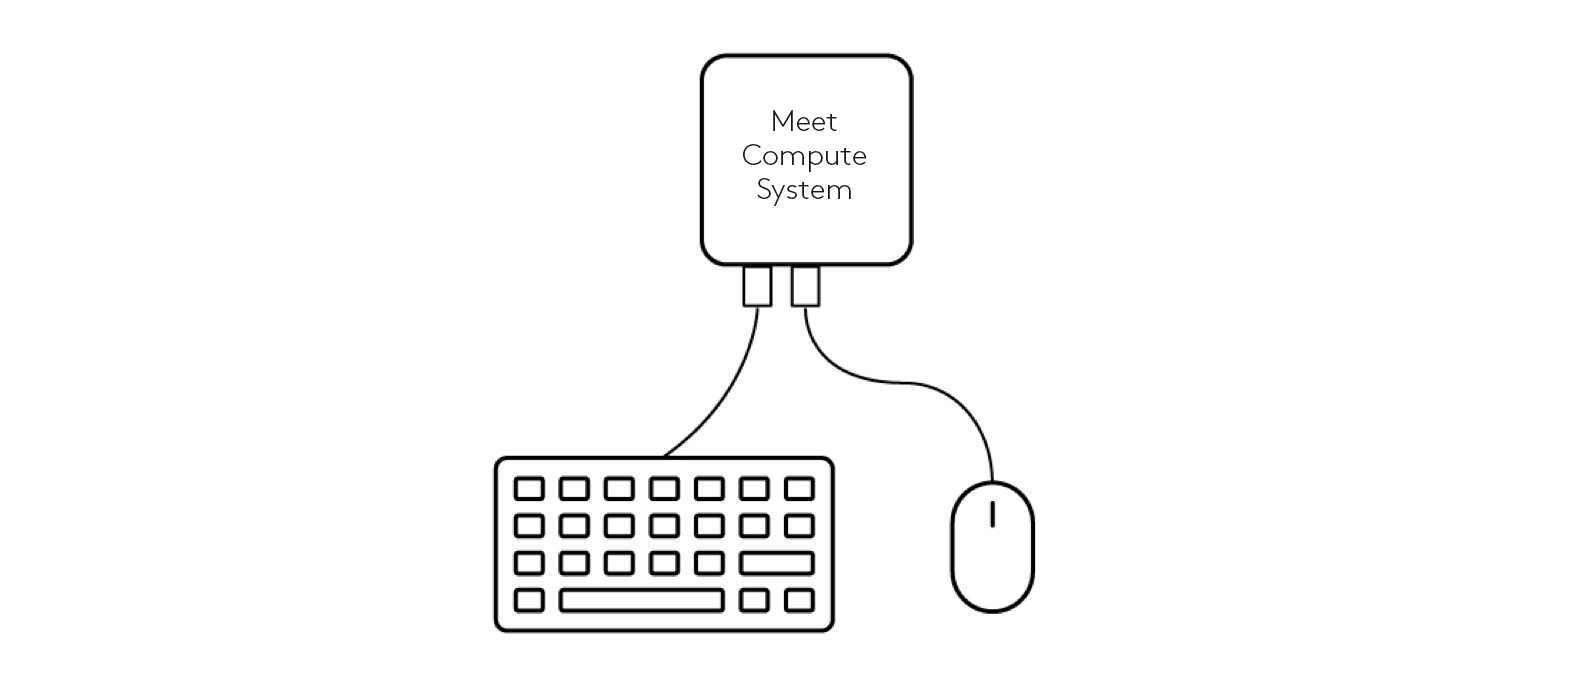 將鍵盤和滑鼠連接到會議運算系統的連接示意圖